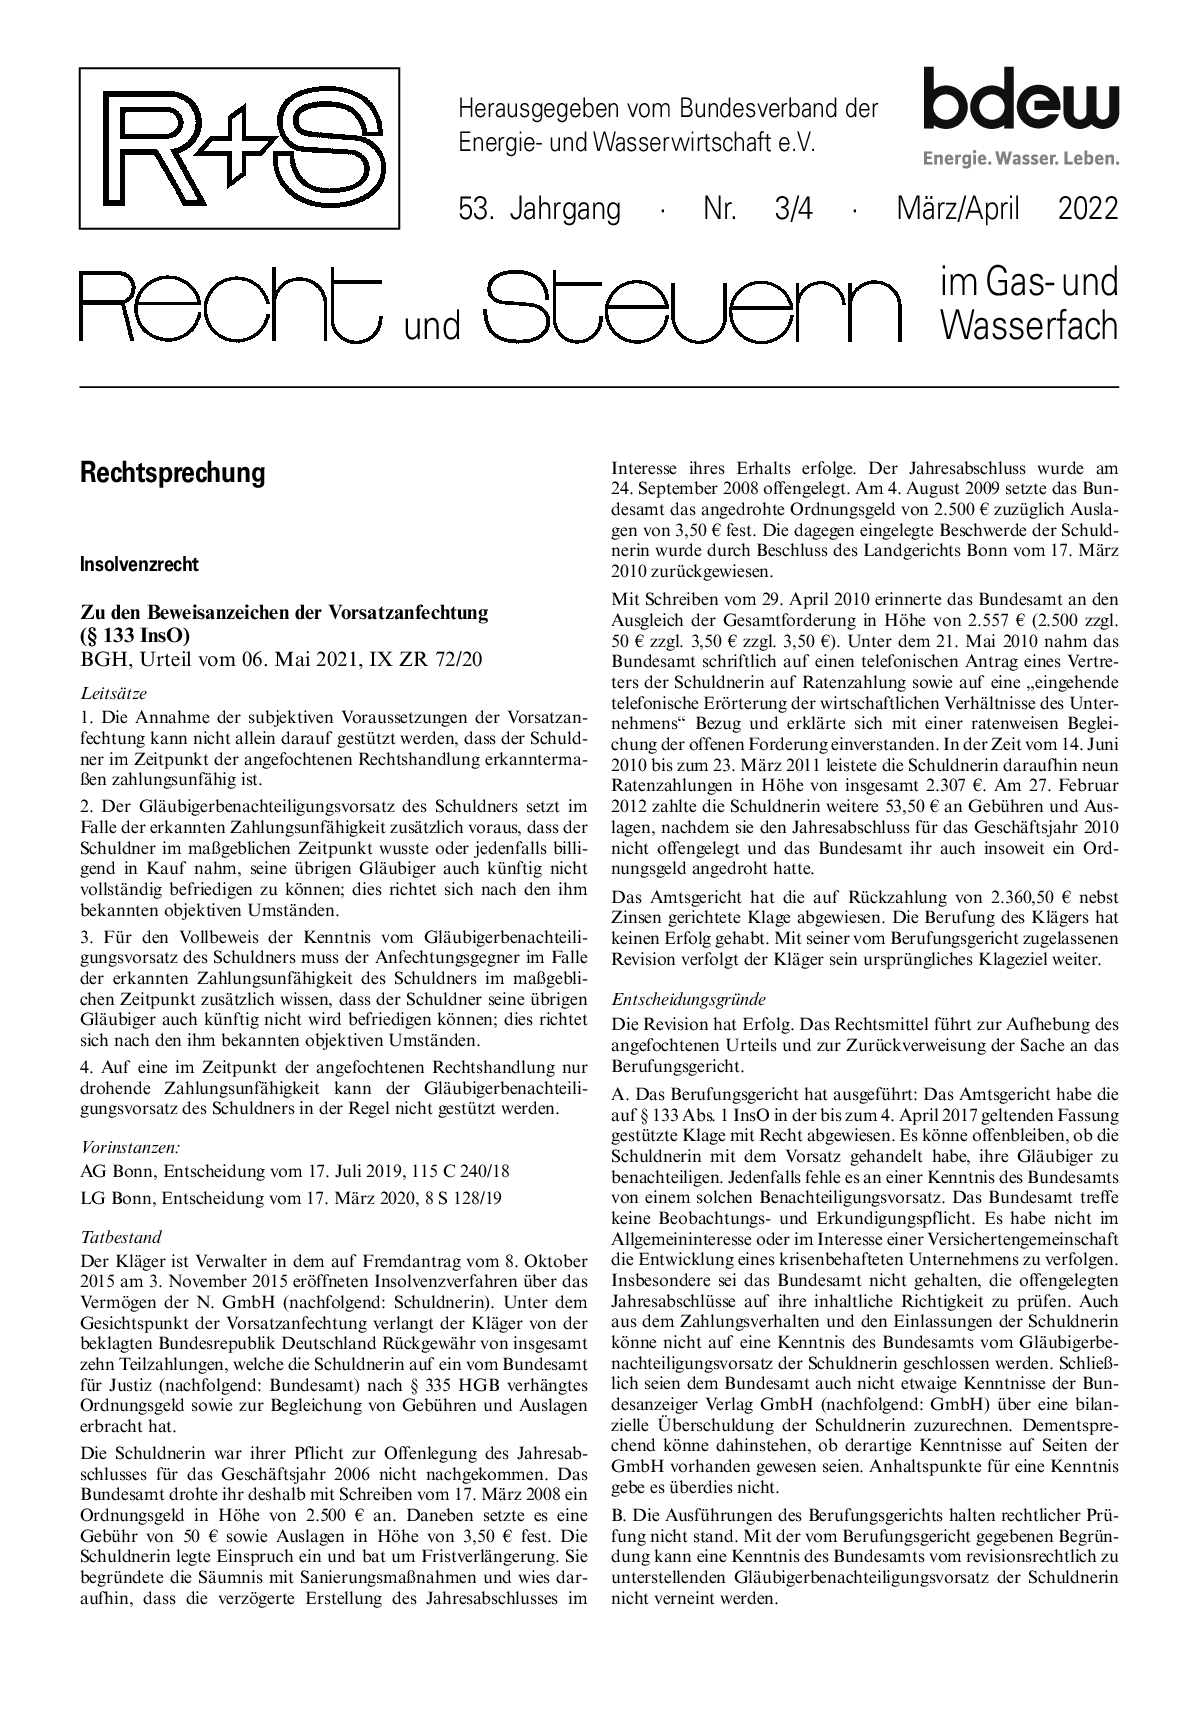 R + S - Recht und Steuern im Gas- und Wasserfach - 03-04 2022